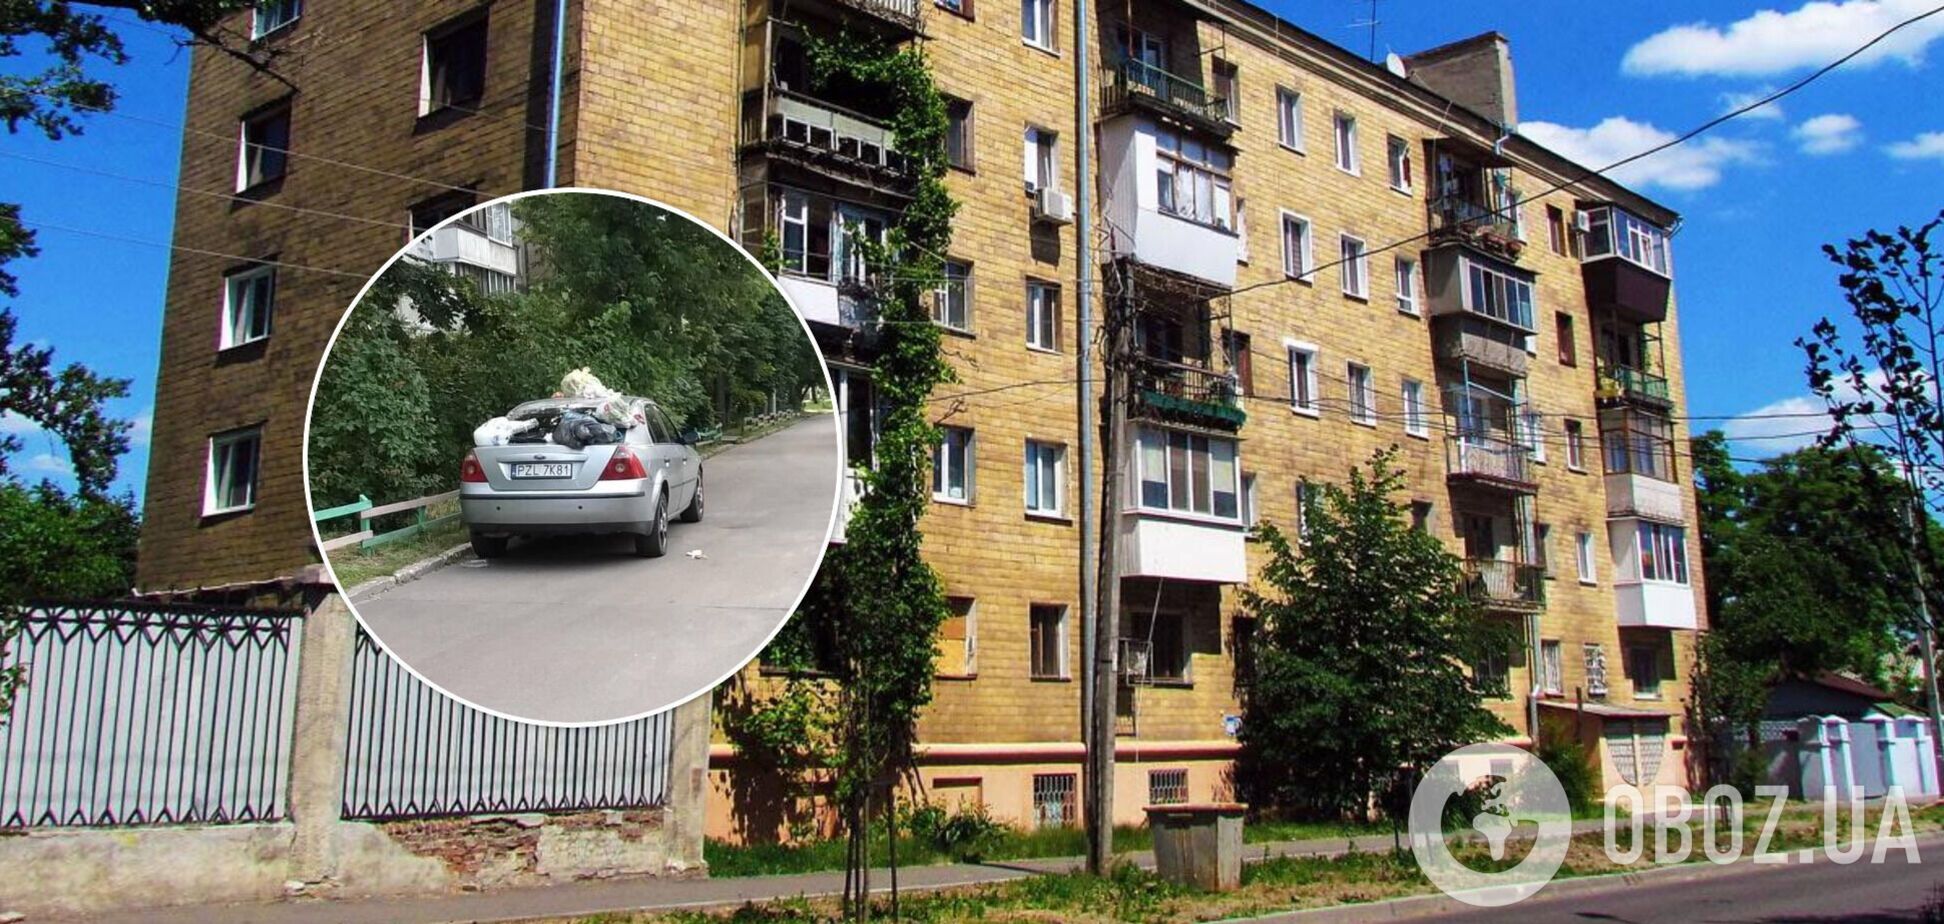 Инцидент произошел на улице Березняковской, 8